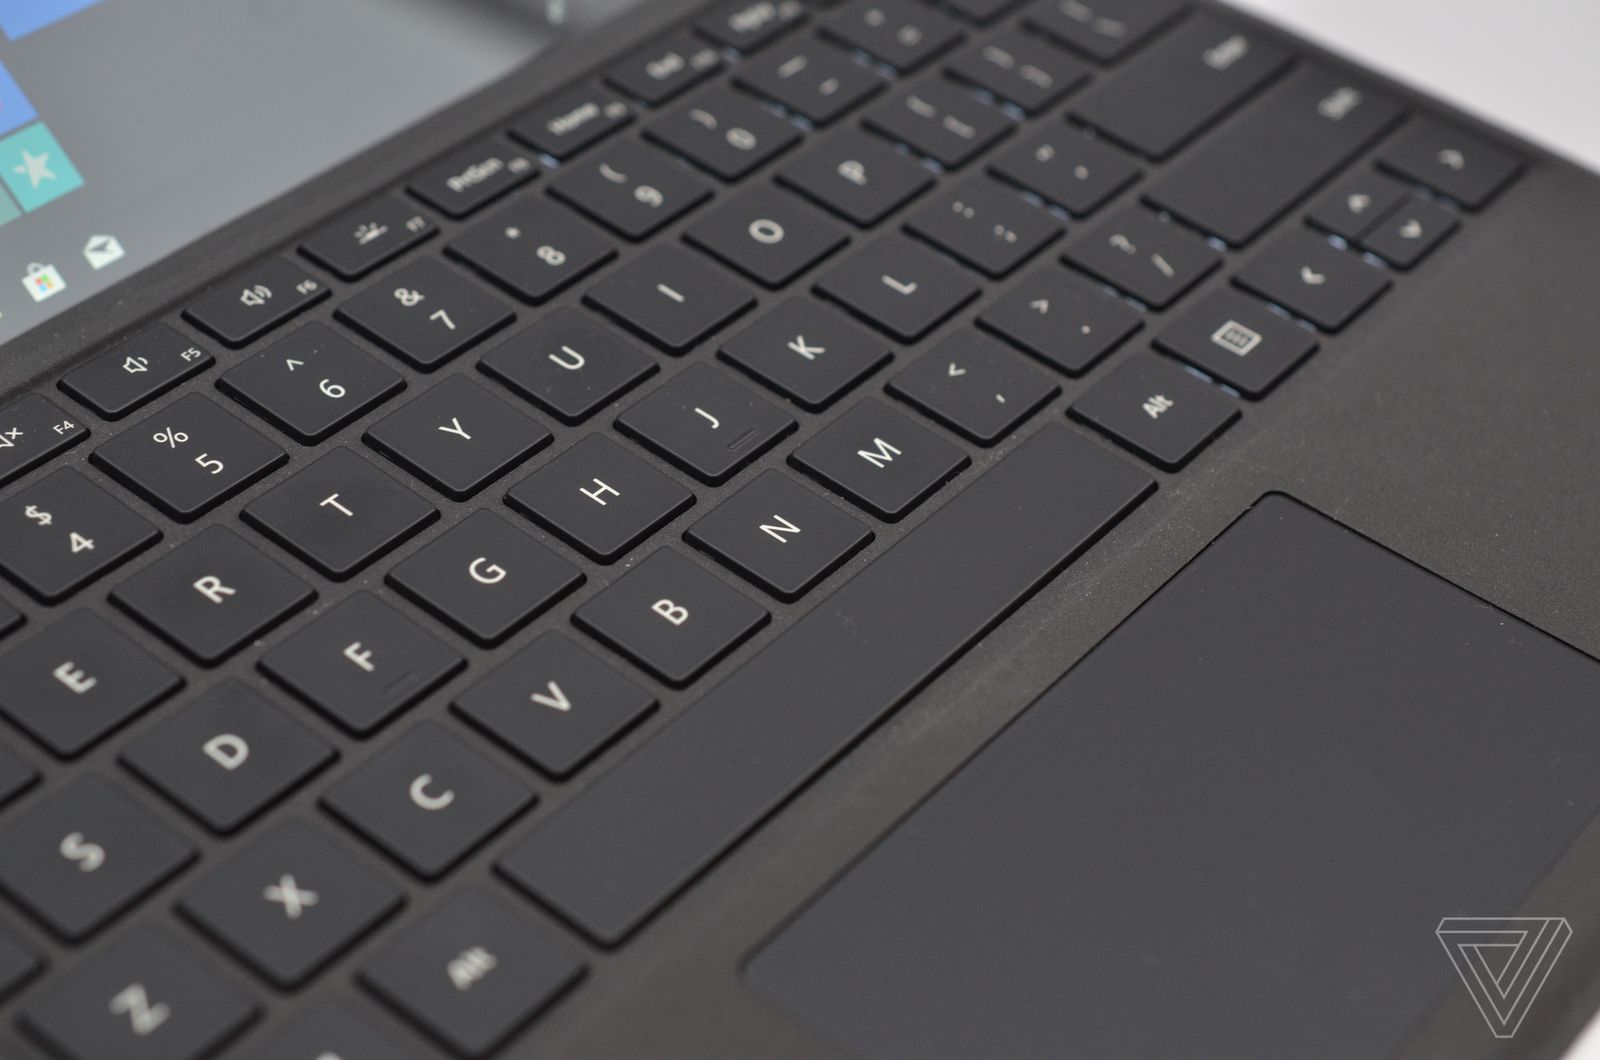 Trên tay Surface Pro 6 phiên bản màu đen nhám,
nâng cấp đến từ bên trong